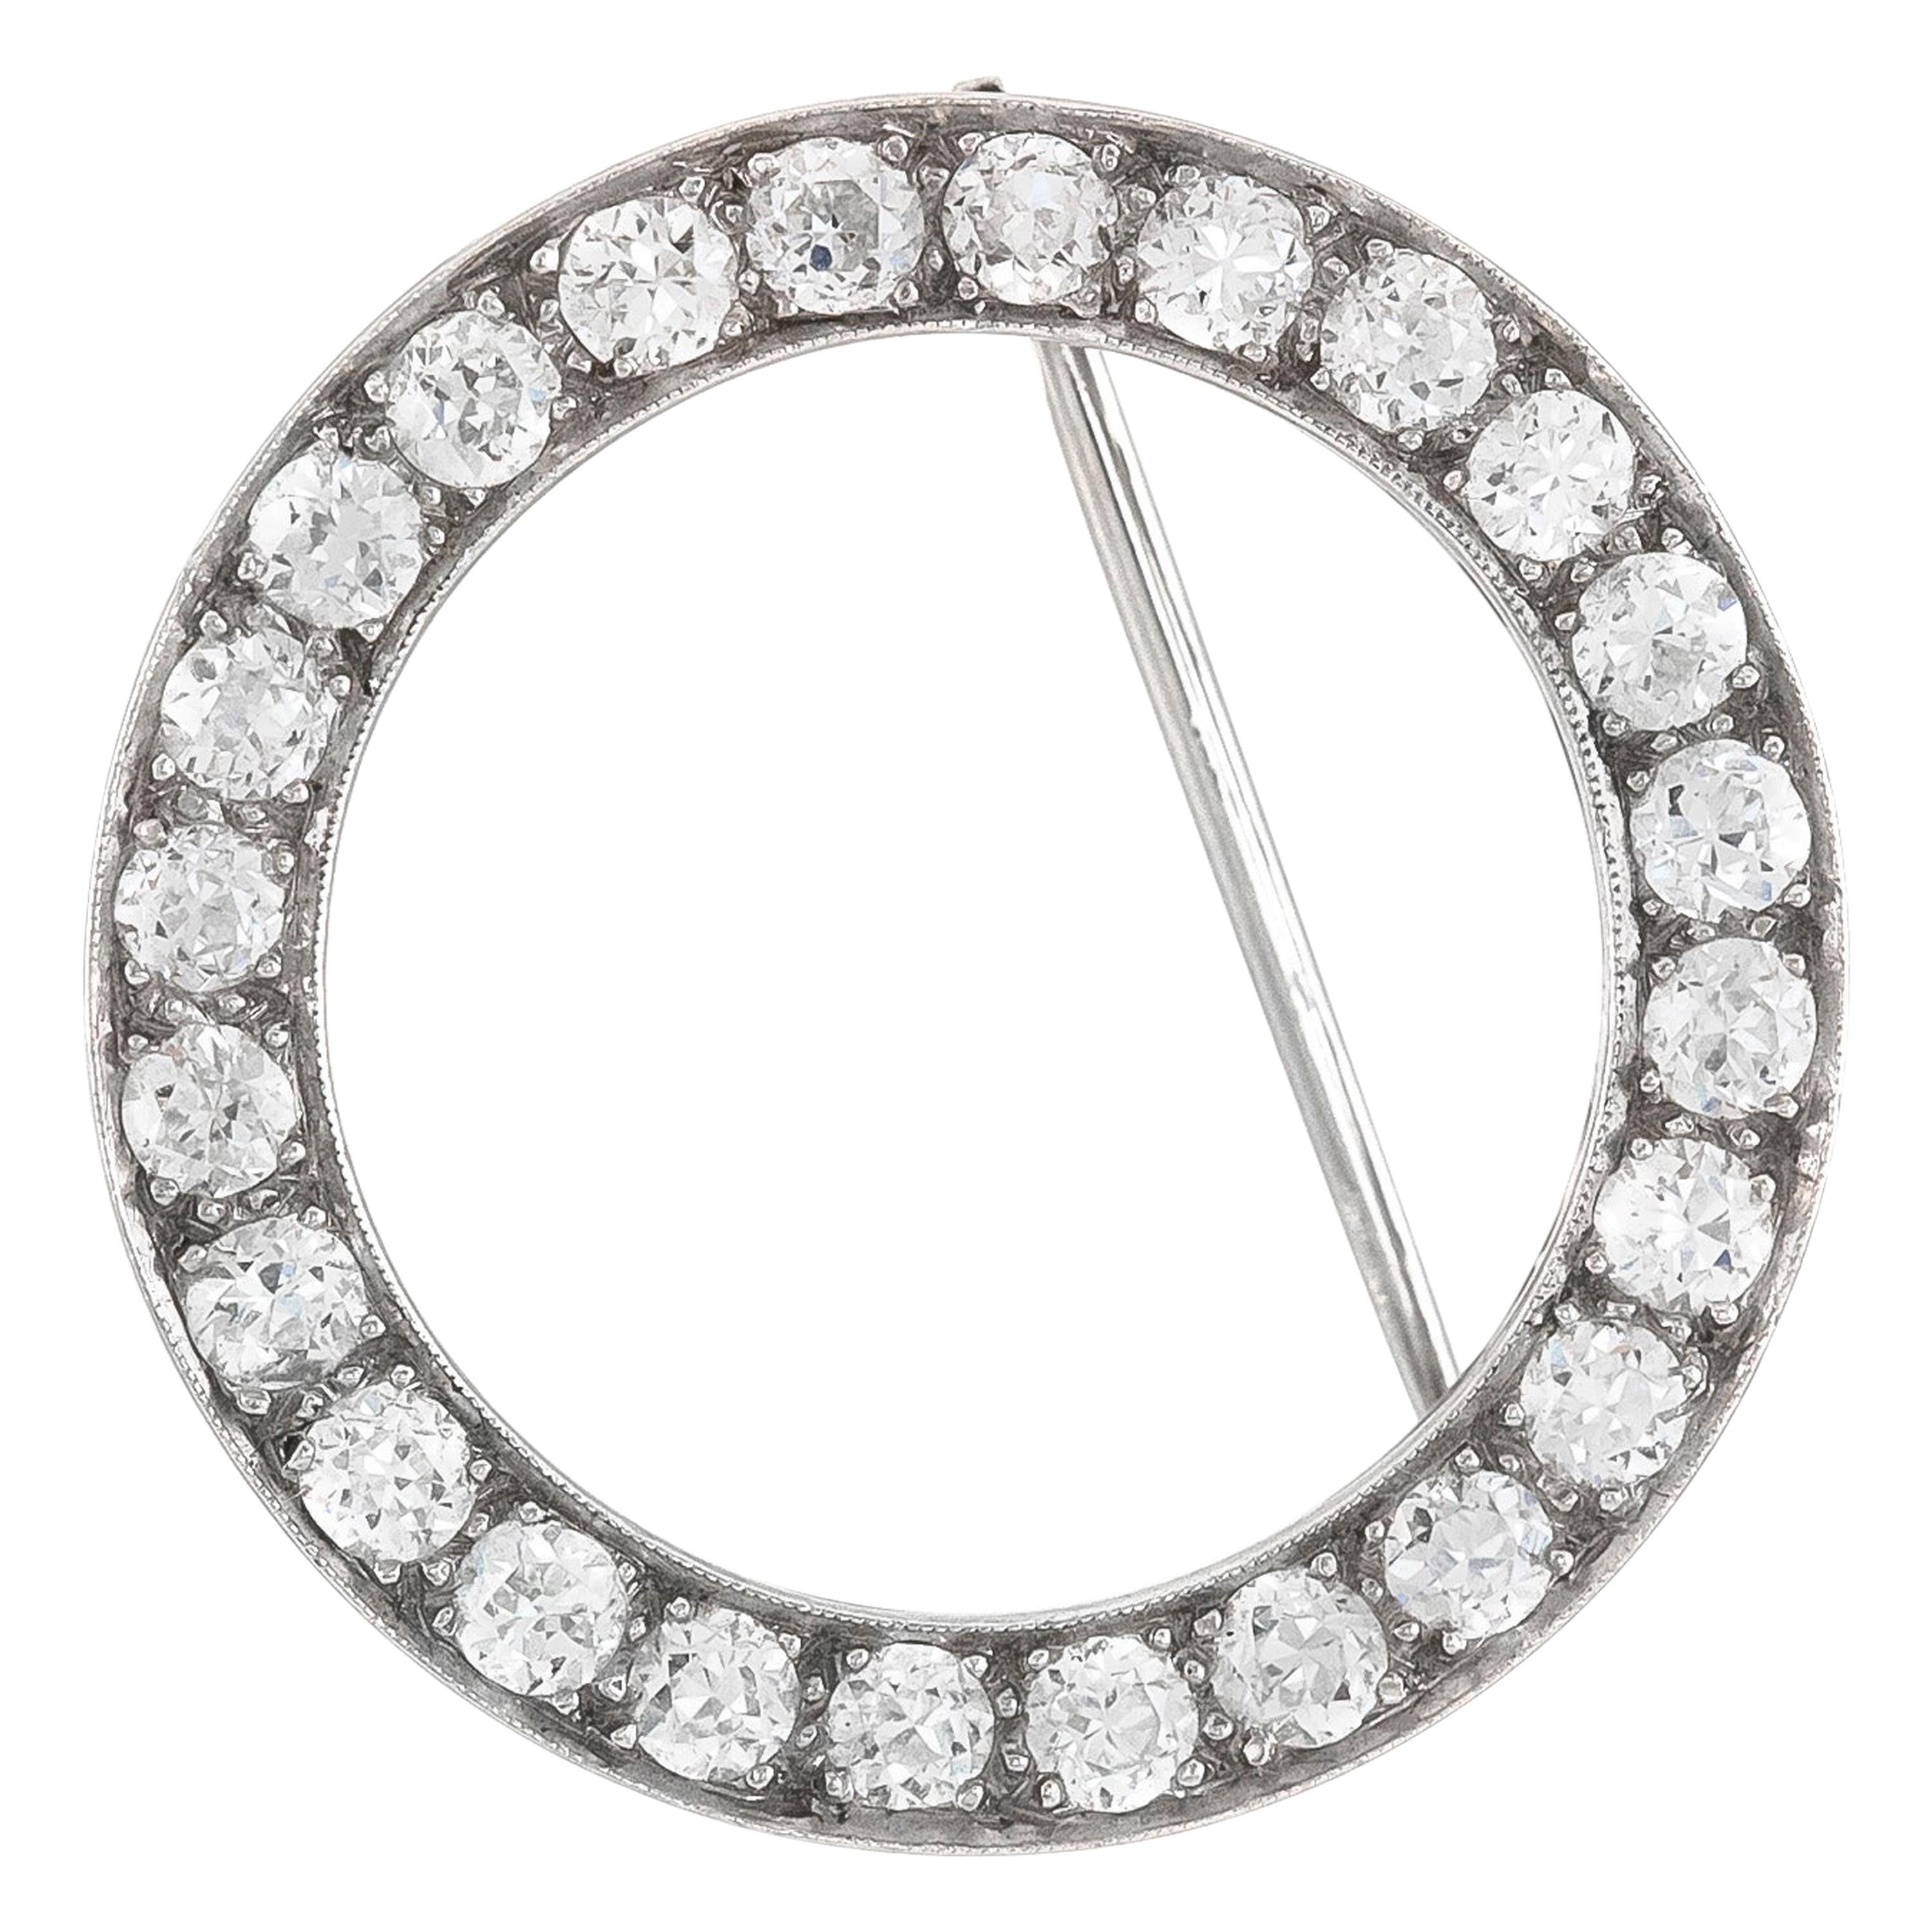 Épingle circulaire des années 1930 avec diamants